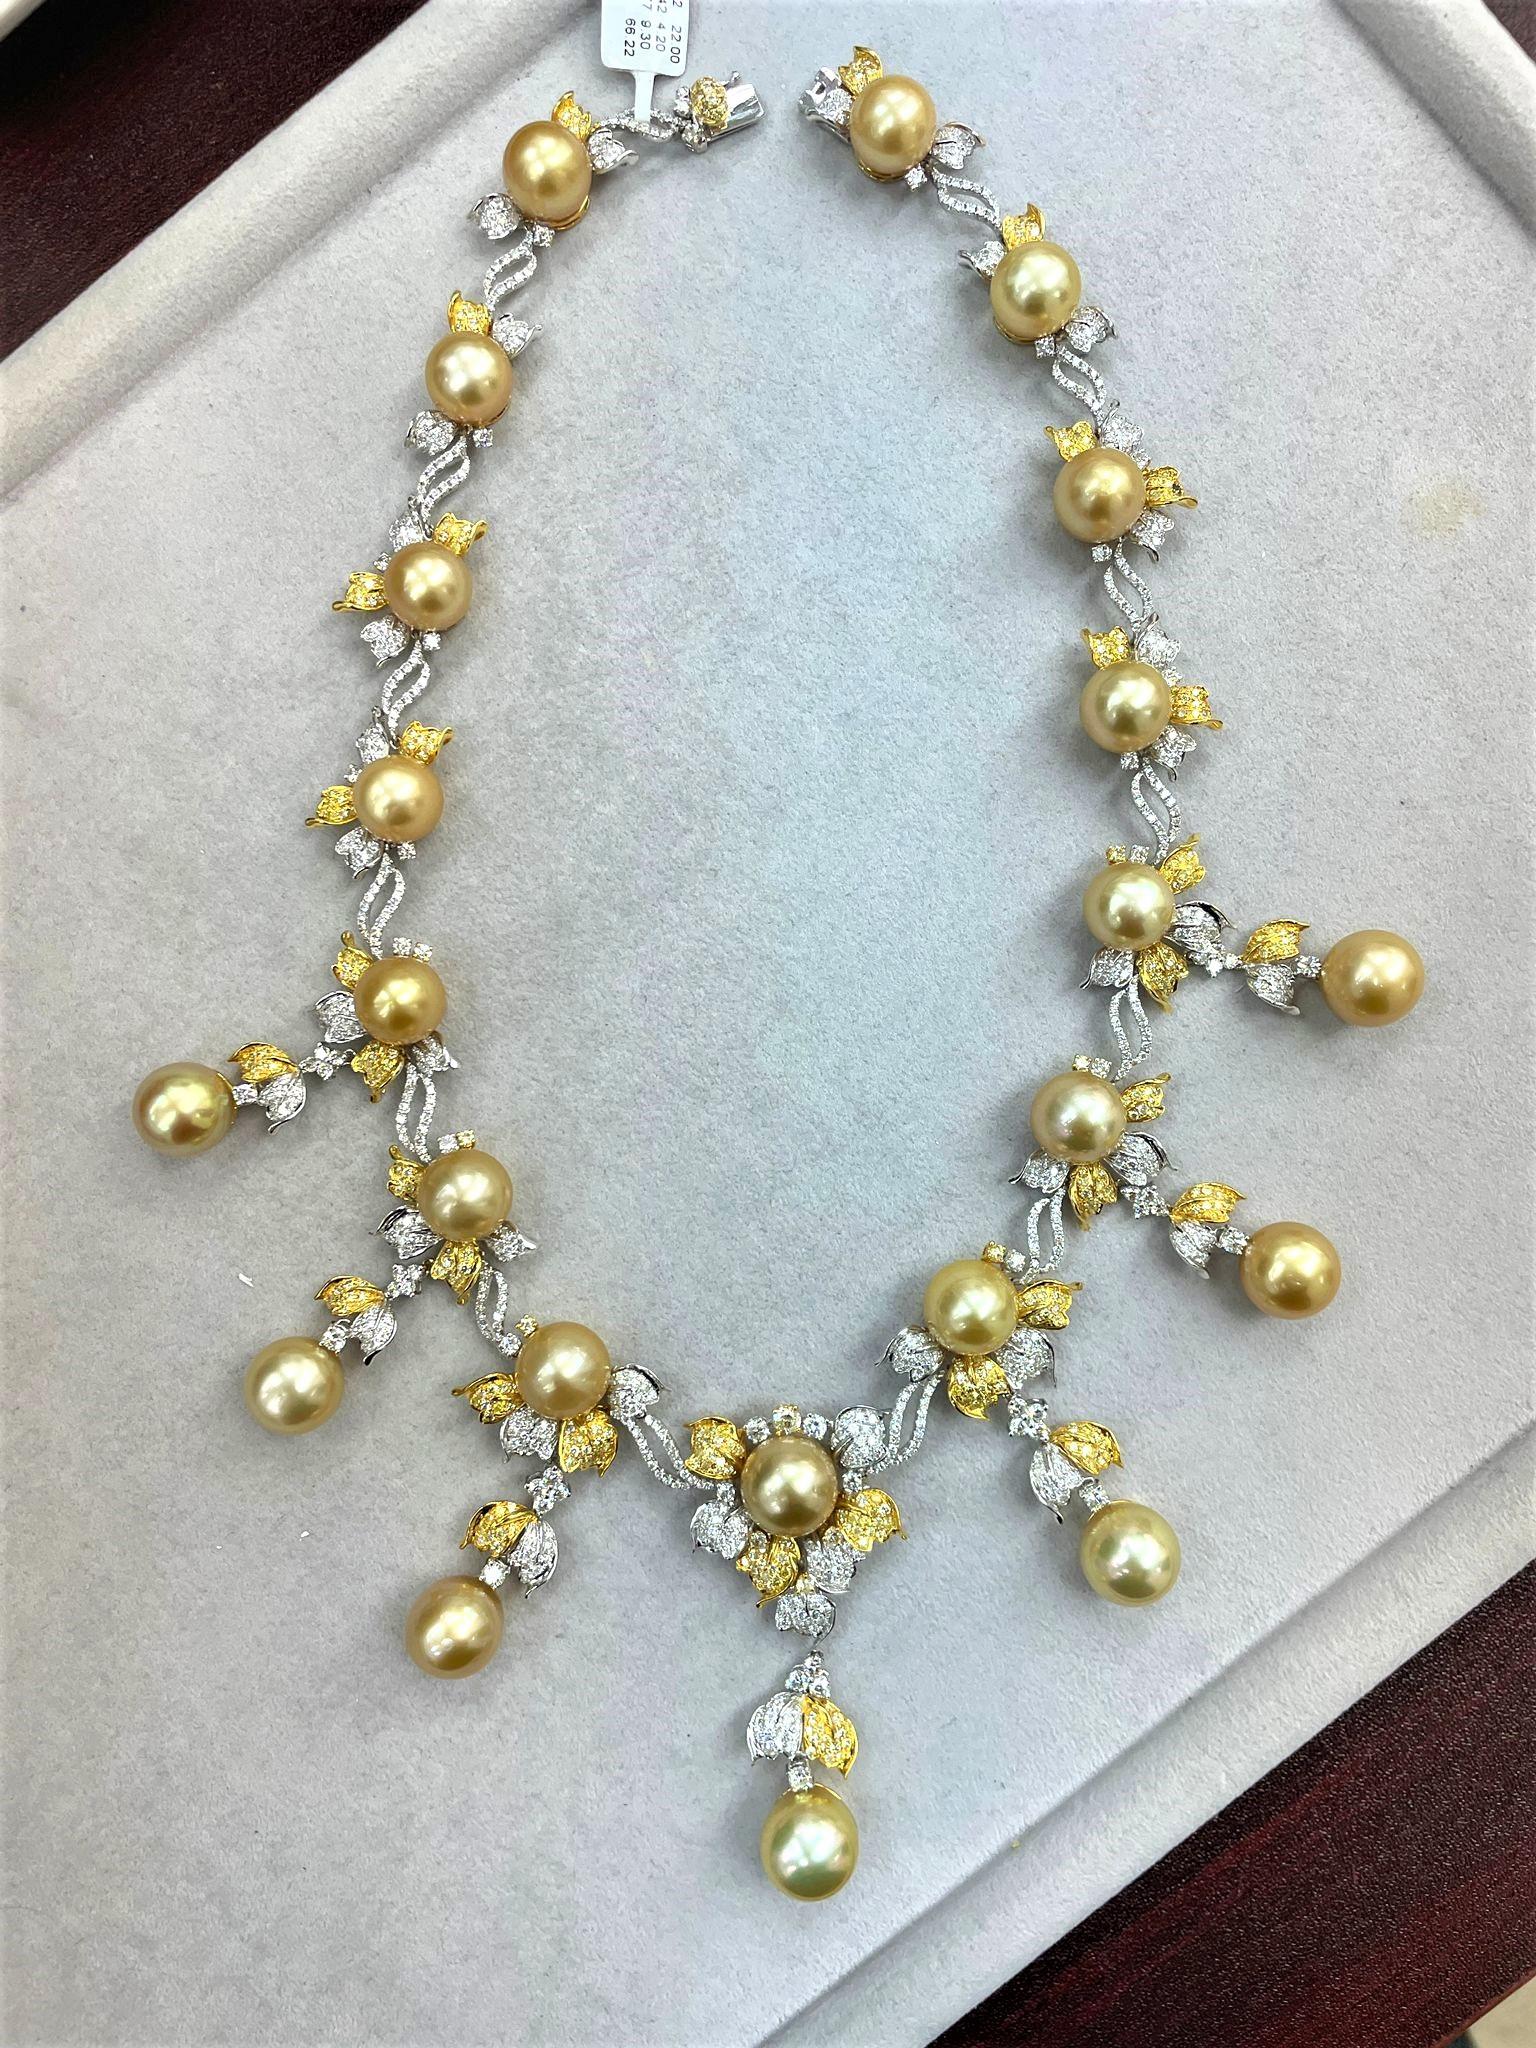 Der folgende Artikel, den wir anbieten, ist diese schöne seltene wichtige 18KT Weiß- und Gelbgold Perlen- und Diamant-Halskette. Halskette besteht aus schönen prächtigen hochglänzenden großen 22 AA-AAA GOLDEN PRISTINE SOUTH SEA PEARLS, die einen